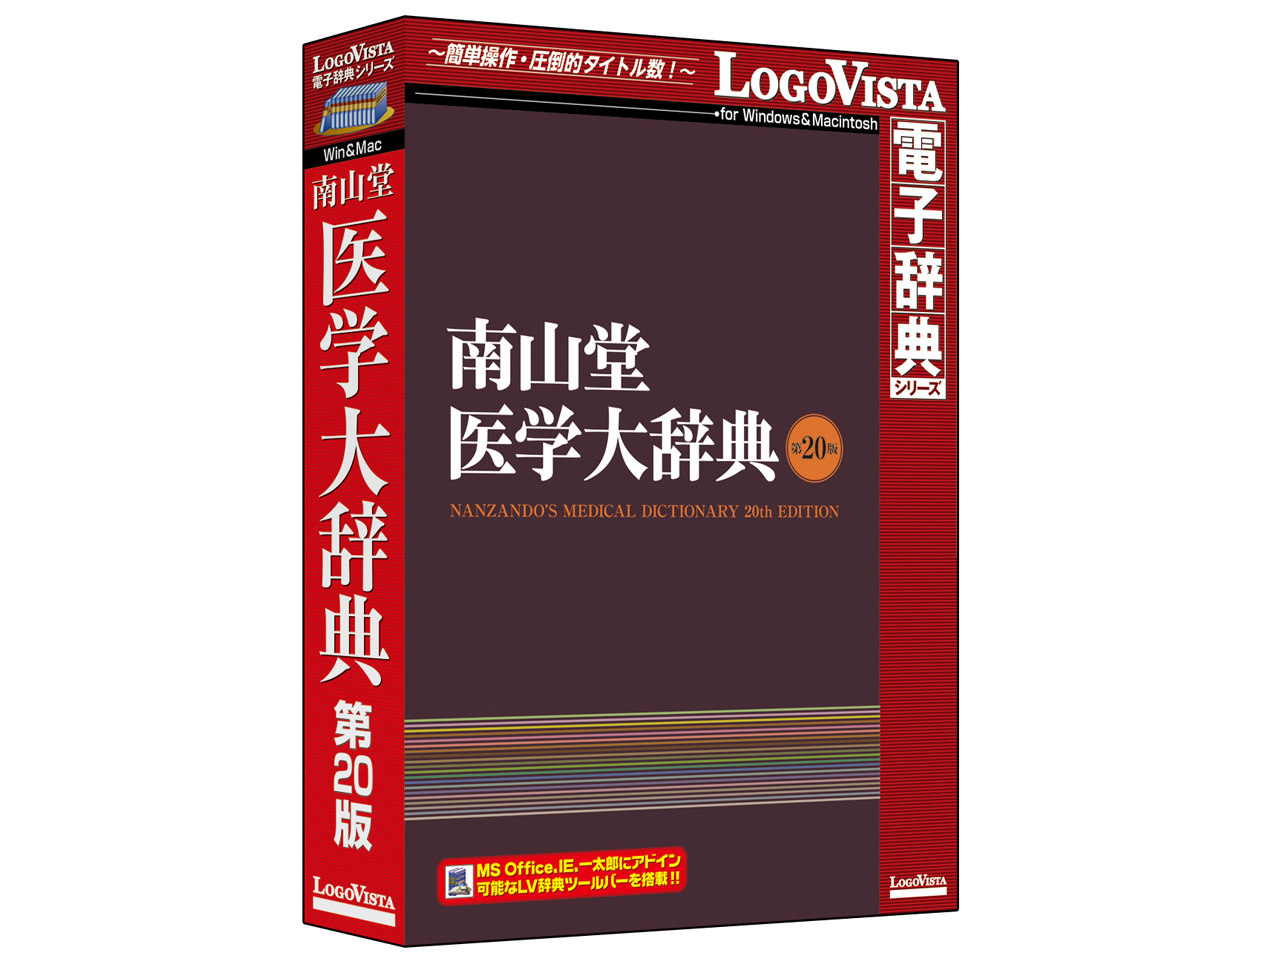 価格.com - 南山堂医学大辞典 第20版 の製品画像